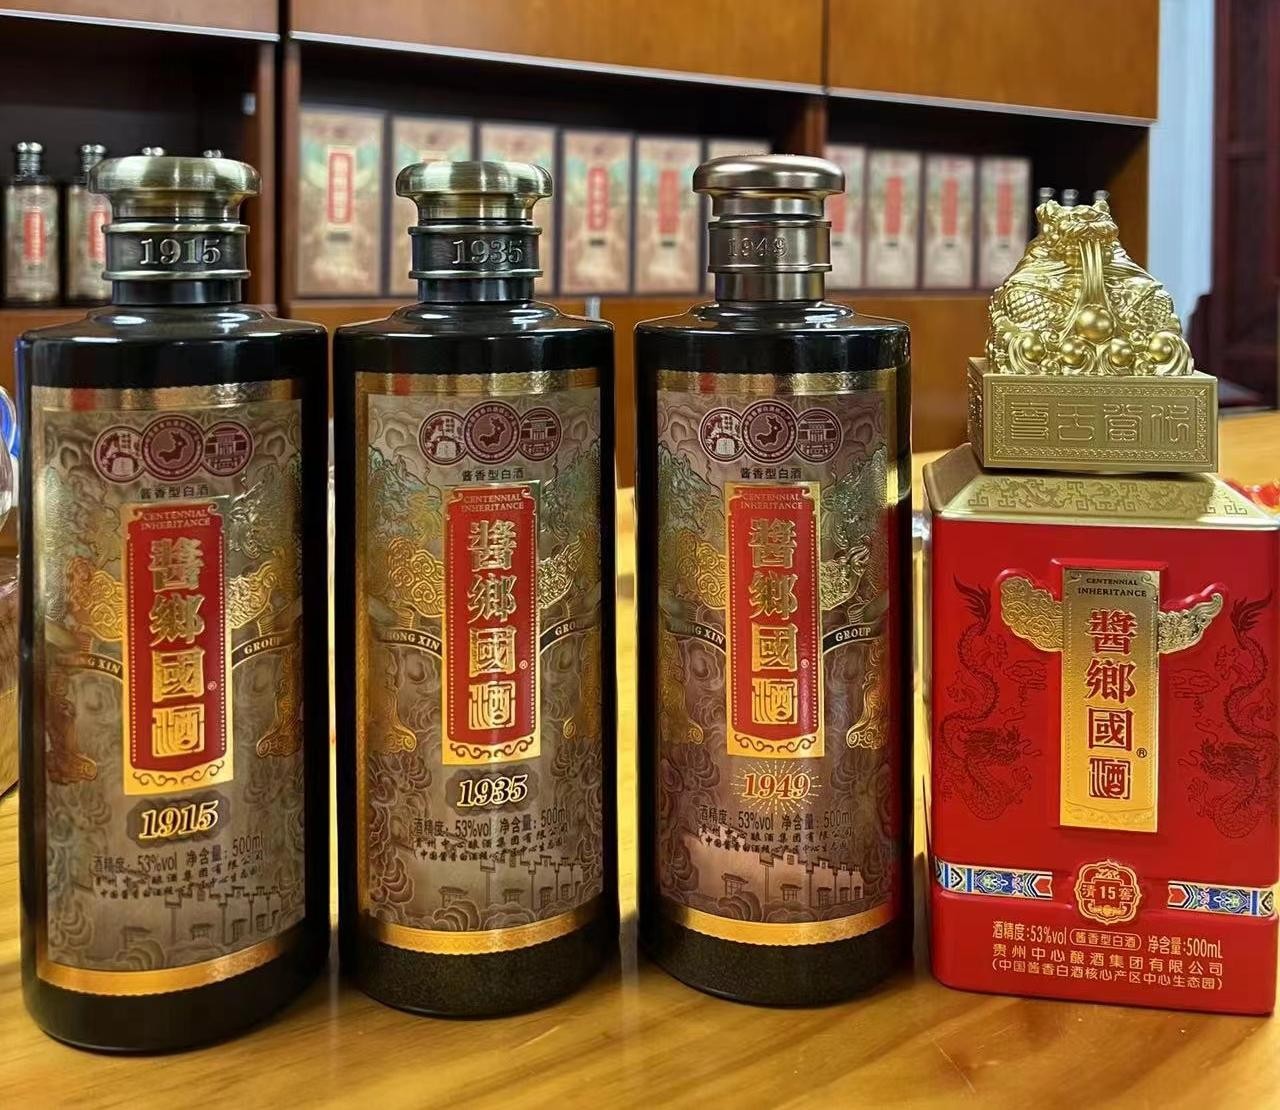 “醬鄉國”酒:传承厚重历史底蕴，匠心酿造高品质酱酒